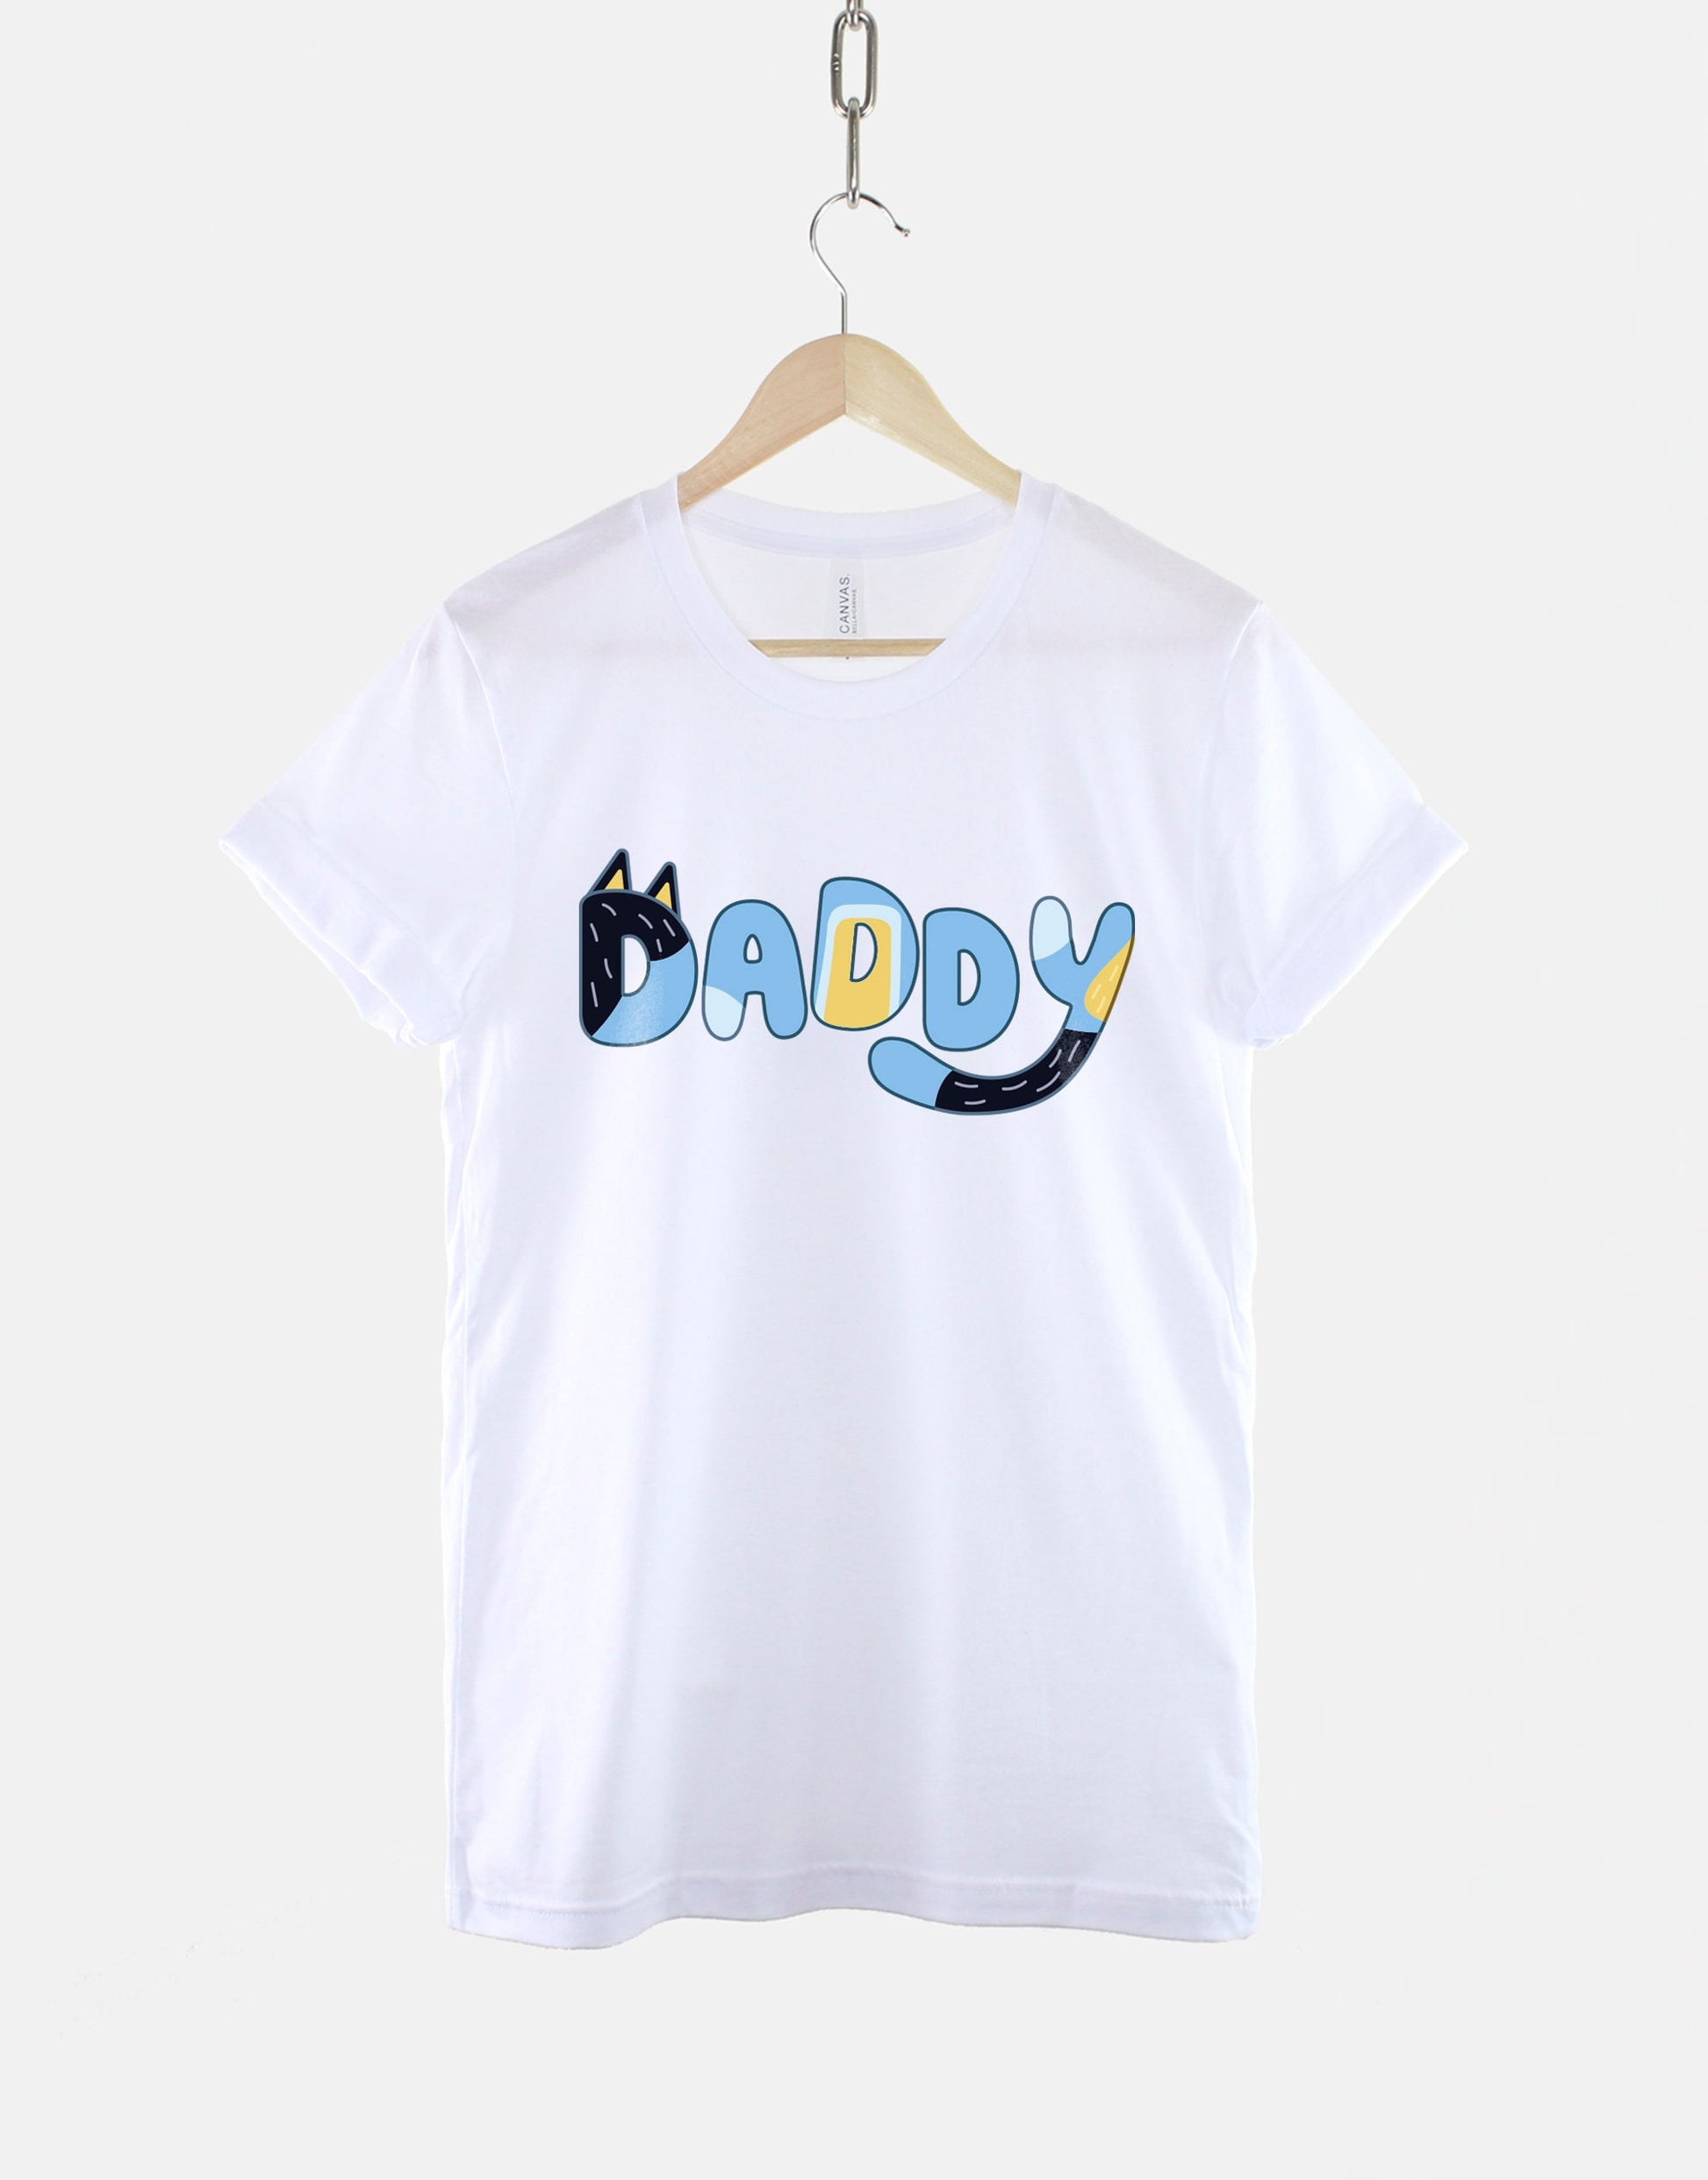 Bluey Dadlife Shirt -  Israel